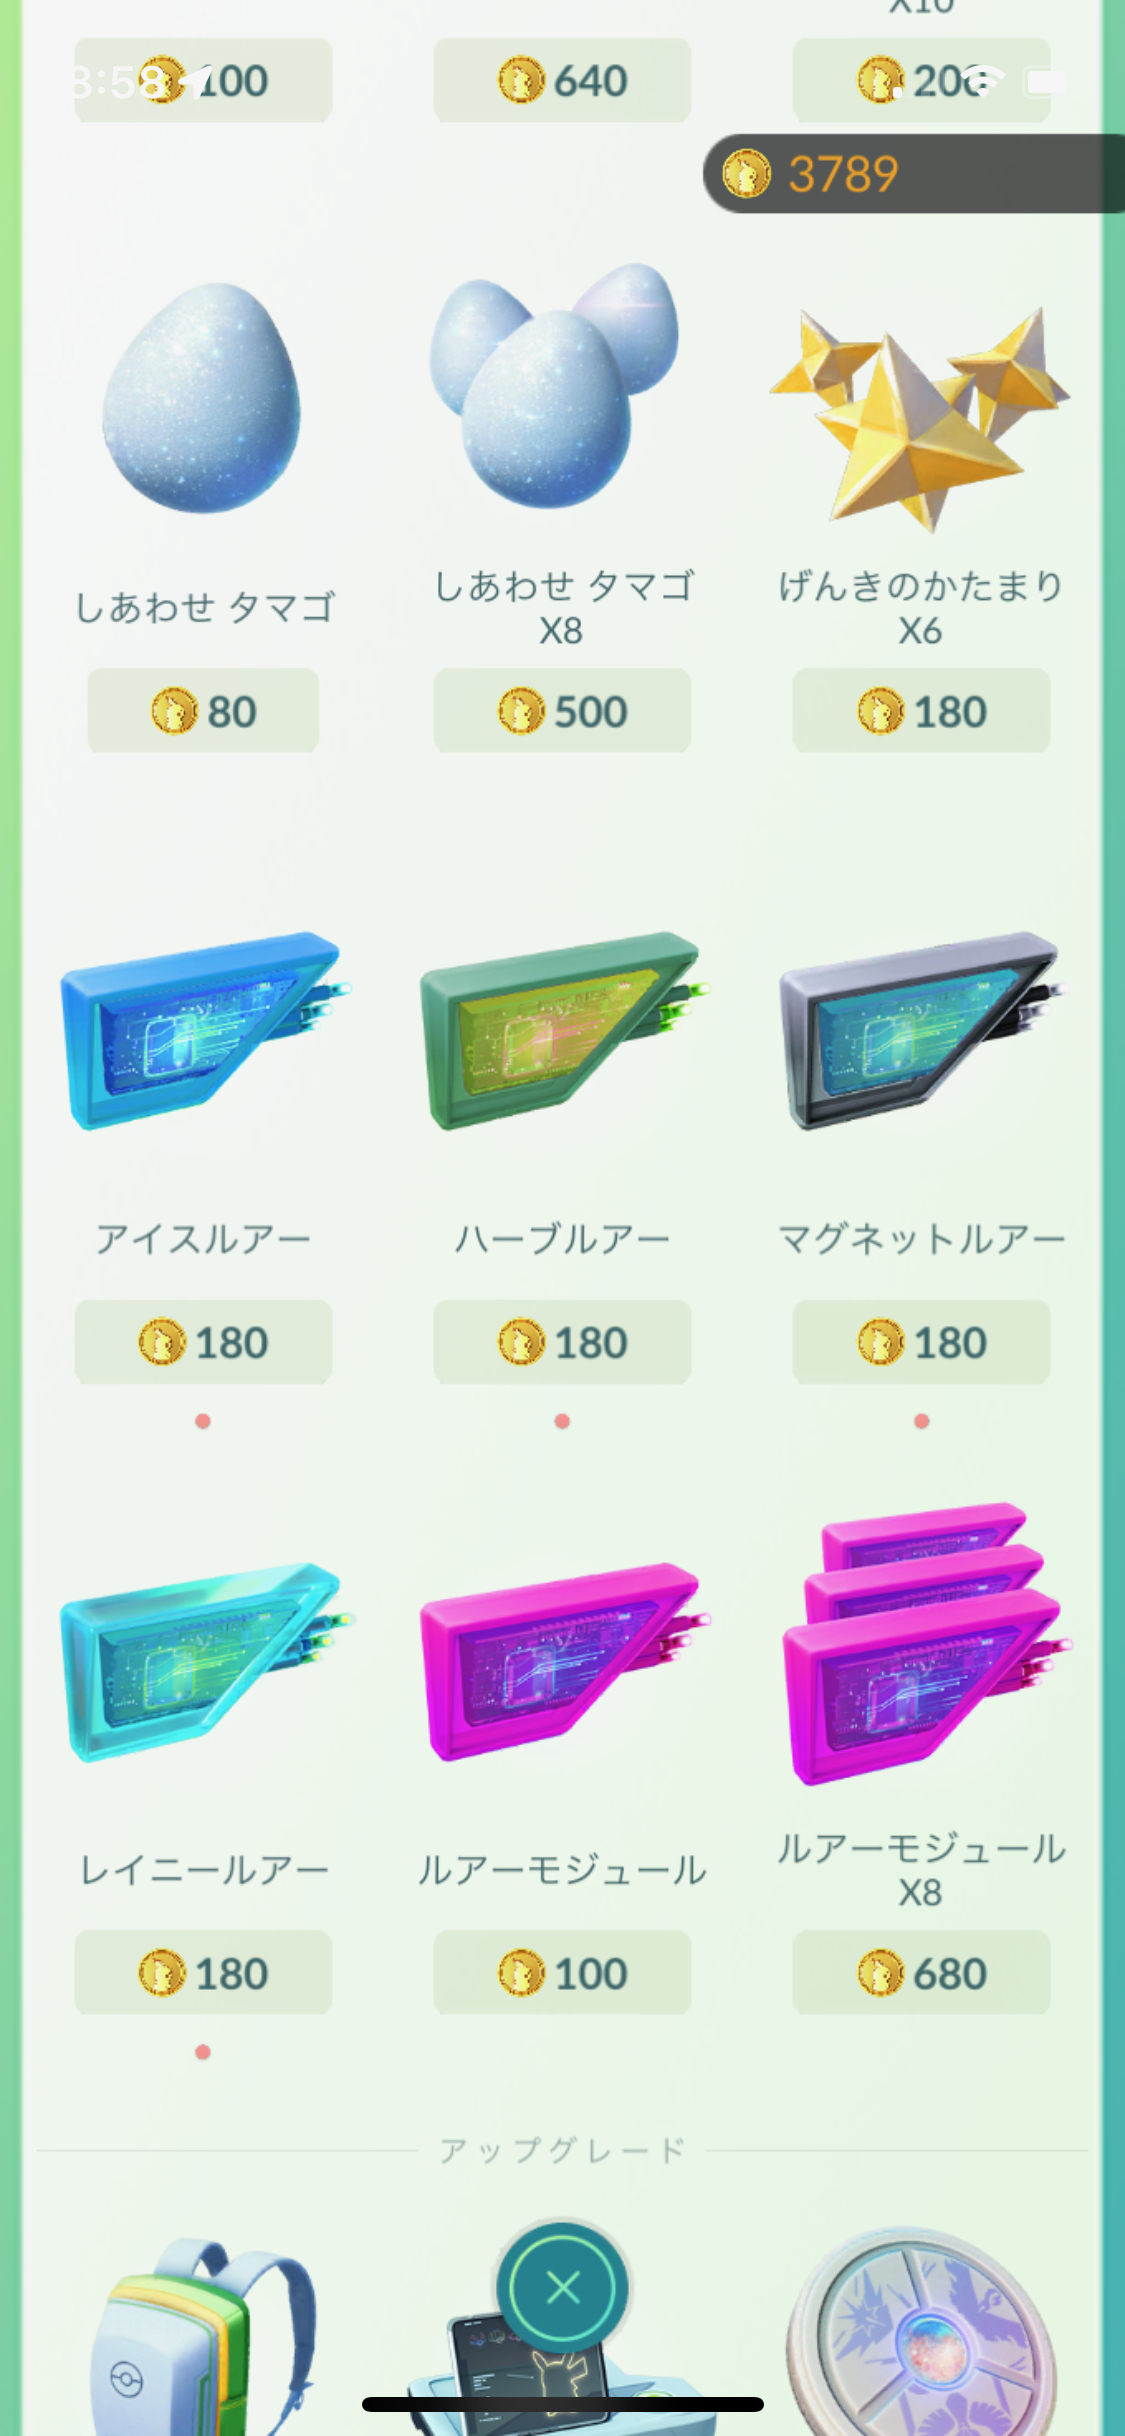 ポケモンgo ルアーモジュールボックスが削除 各種ルアーが180コインで販売再開 Game Apps